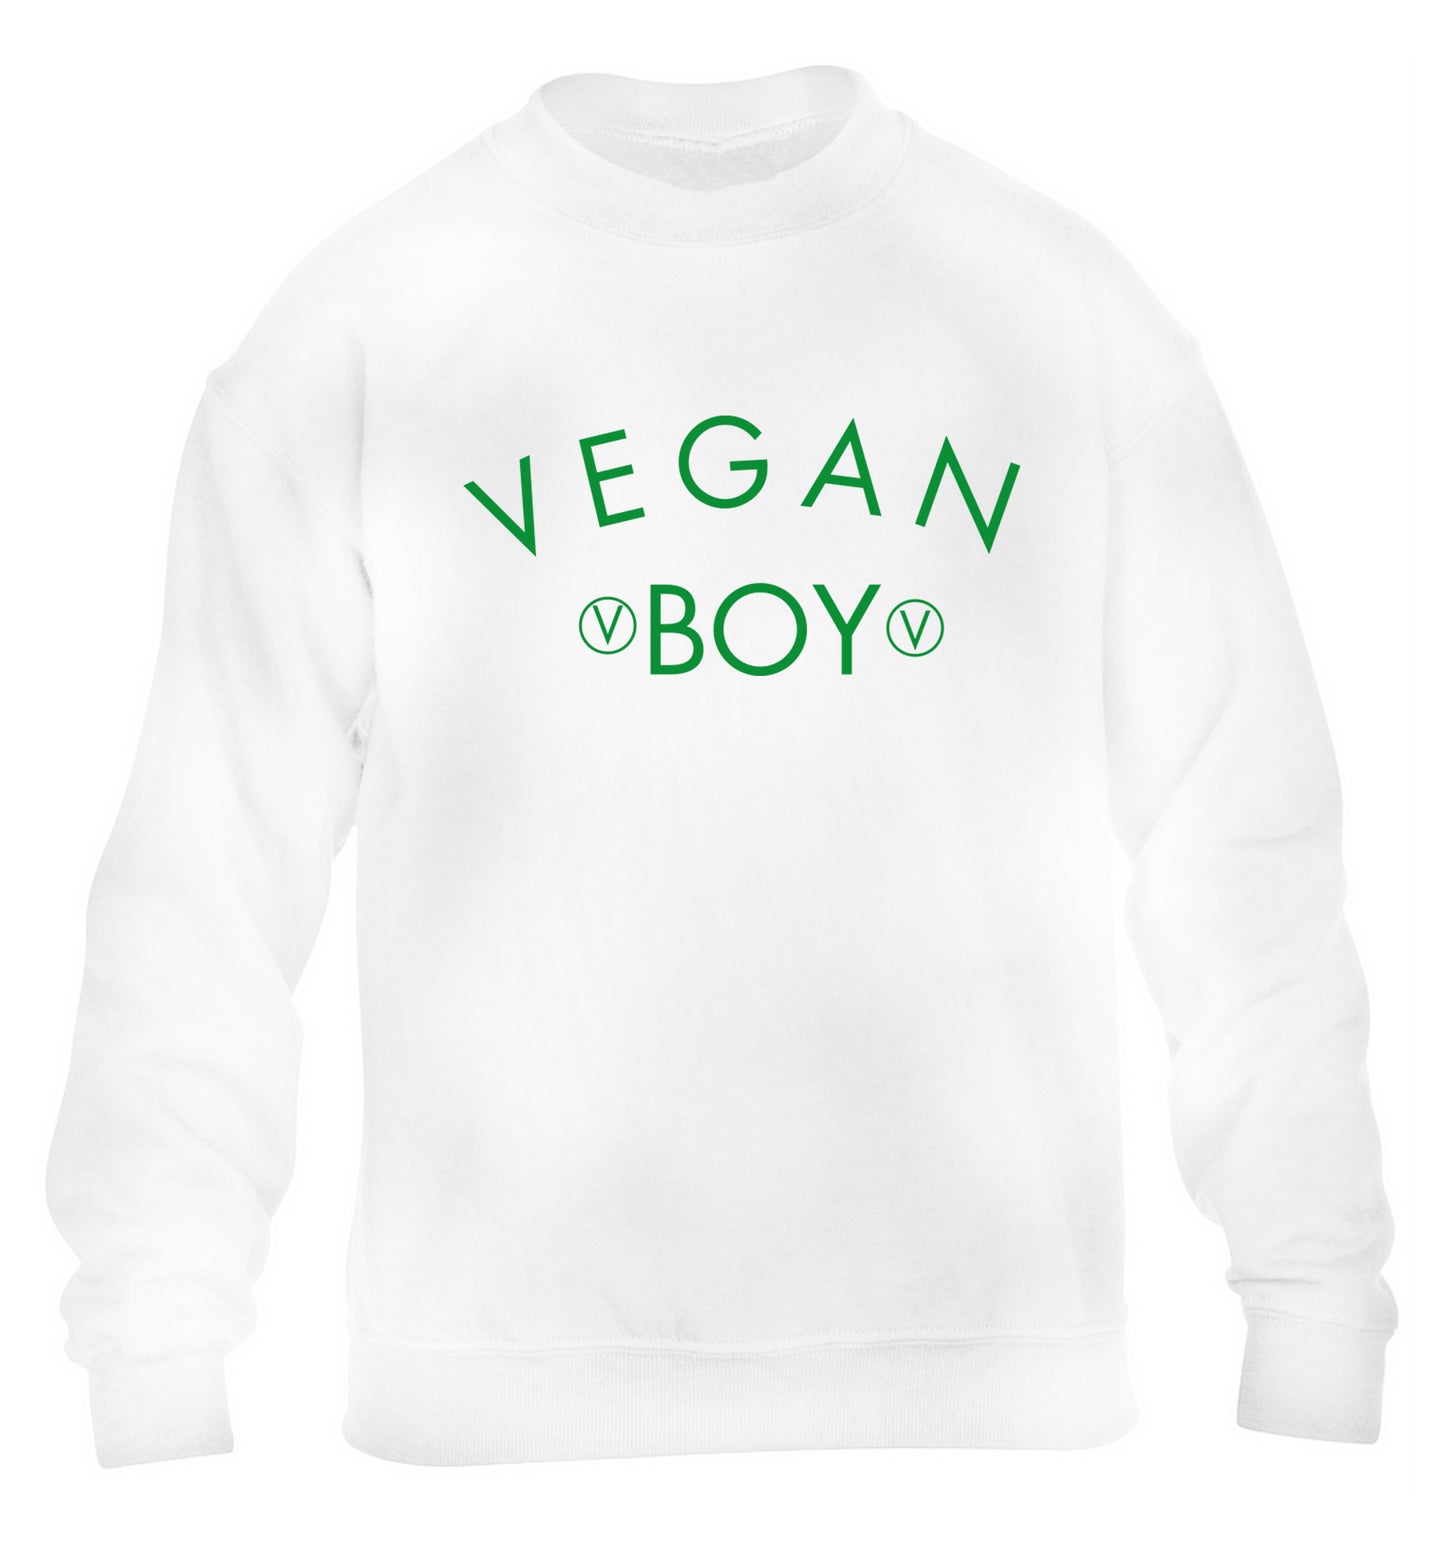 Vegan boy children's white sweater 12-14 Years